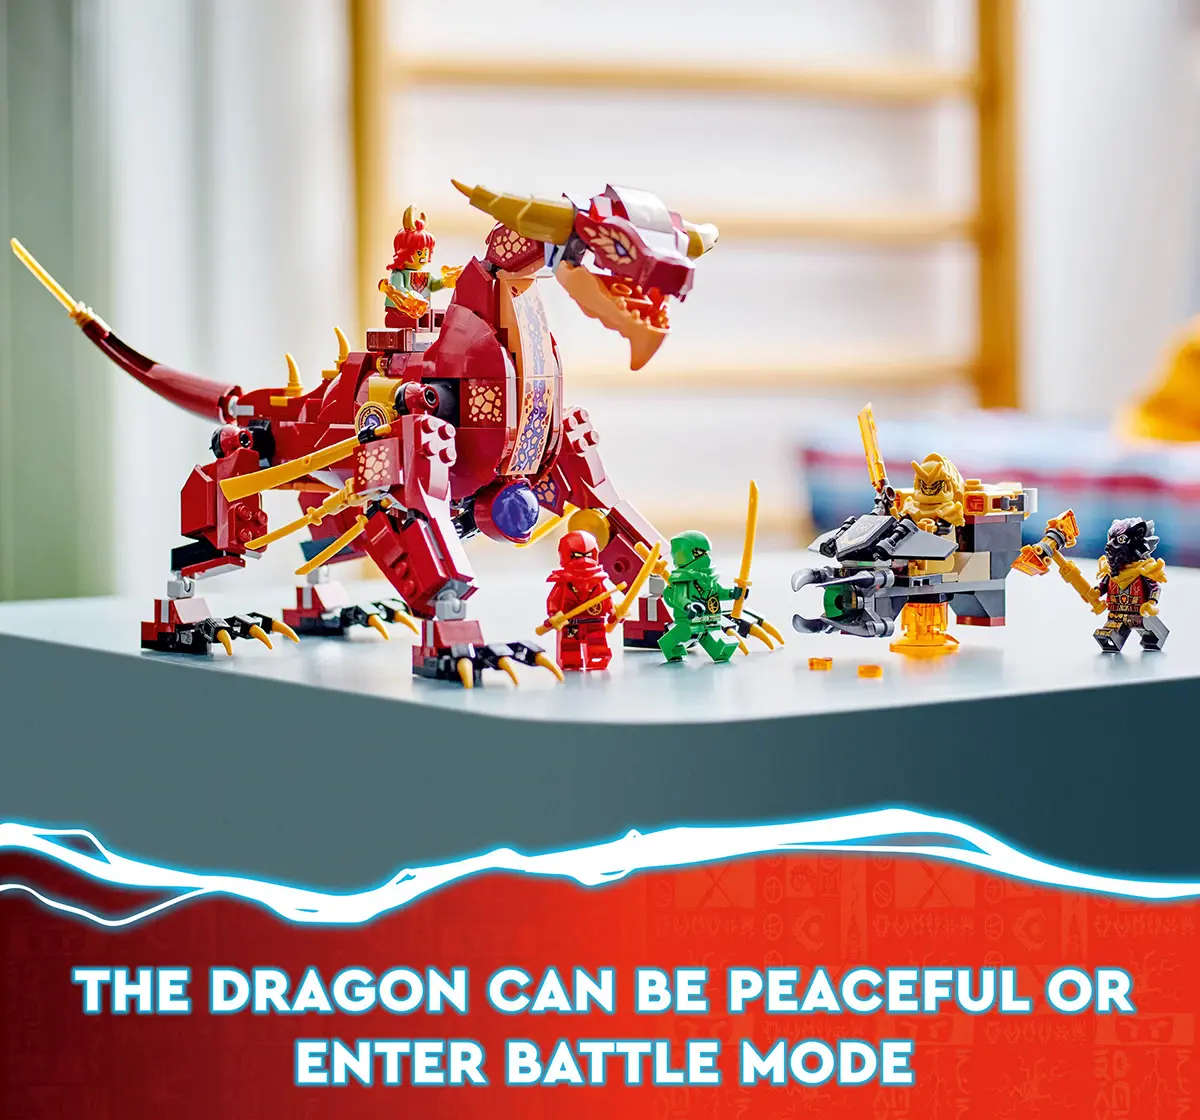 Lego Ninjago Heatwave Transforming Lava Dragon 71793 Building Toy Set (479 Pieces), 8Y+